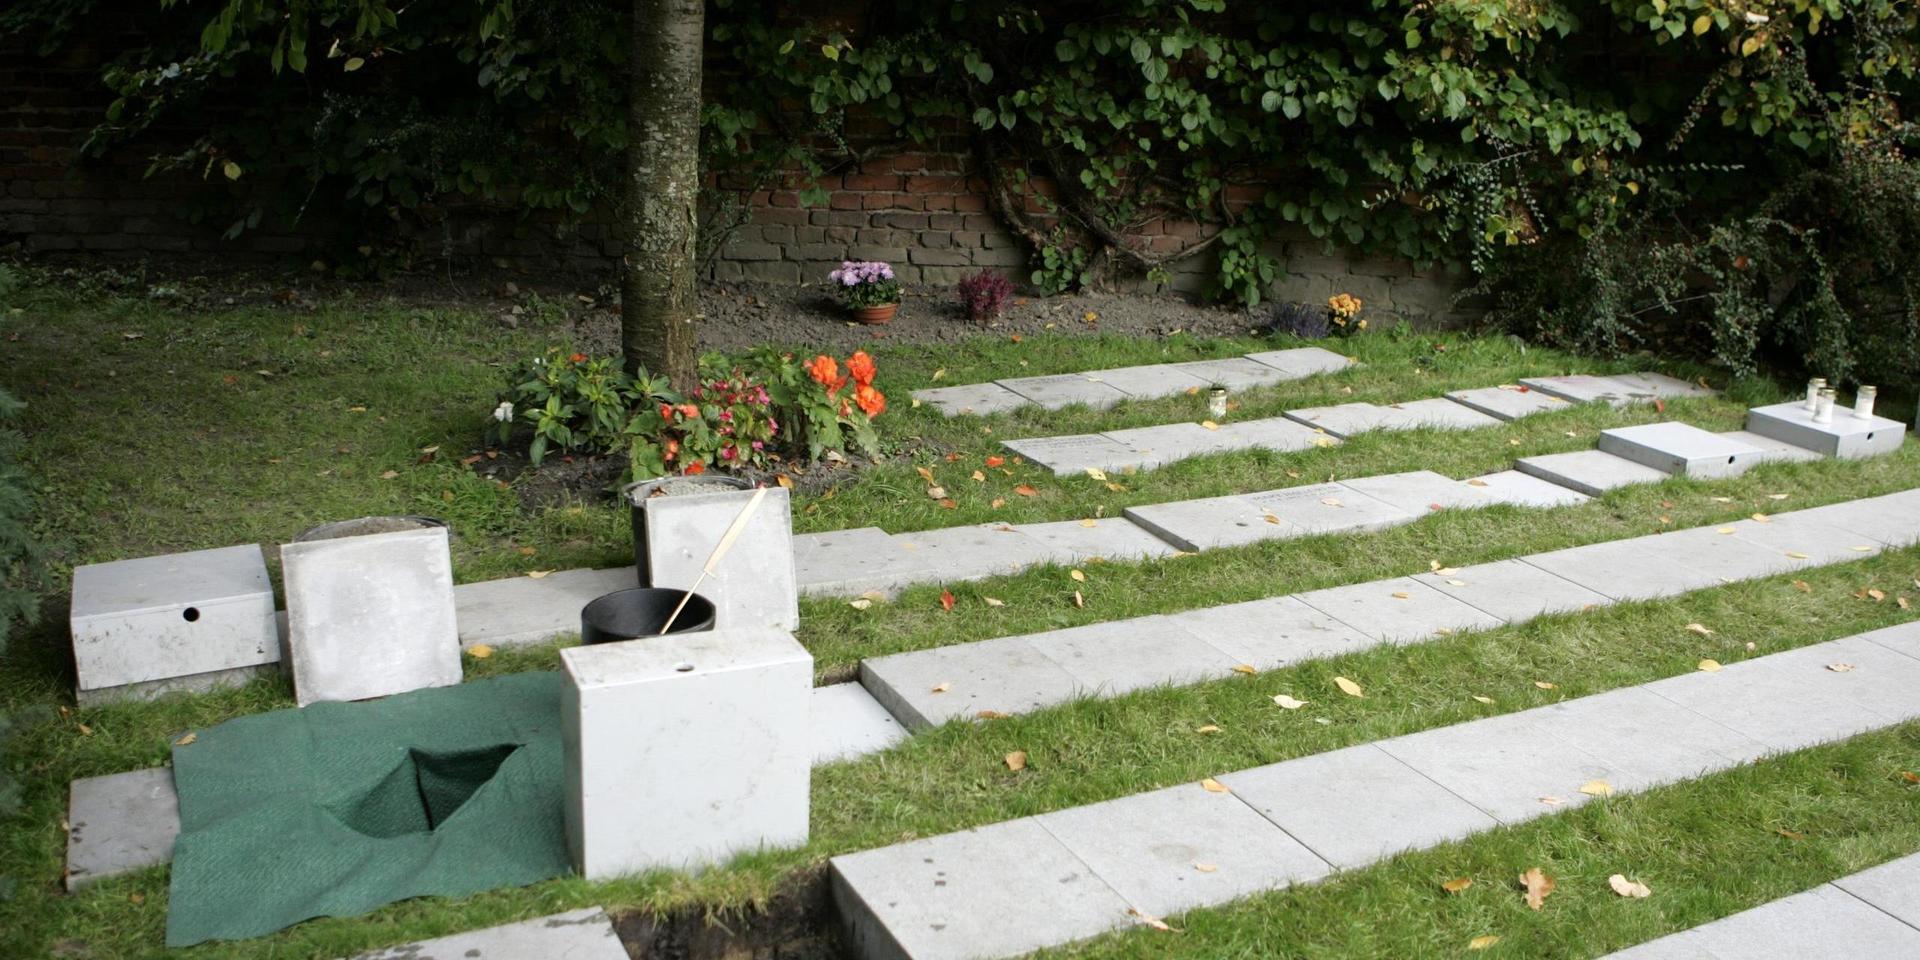 Upp emot 115 bronsplattor har stulits från askgravplatserna på en kyrkogård i Falun. Kyrkogården på bilden är inte den drabbade. Arkivbild.